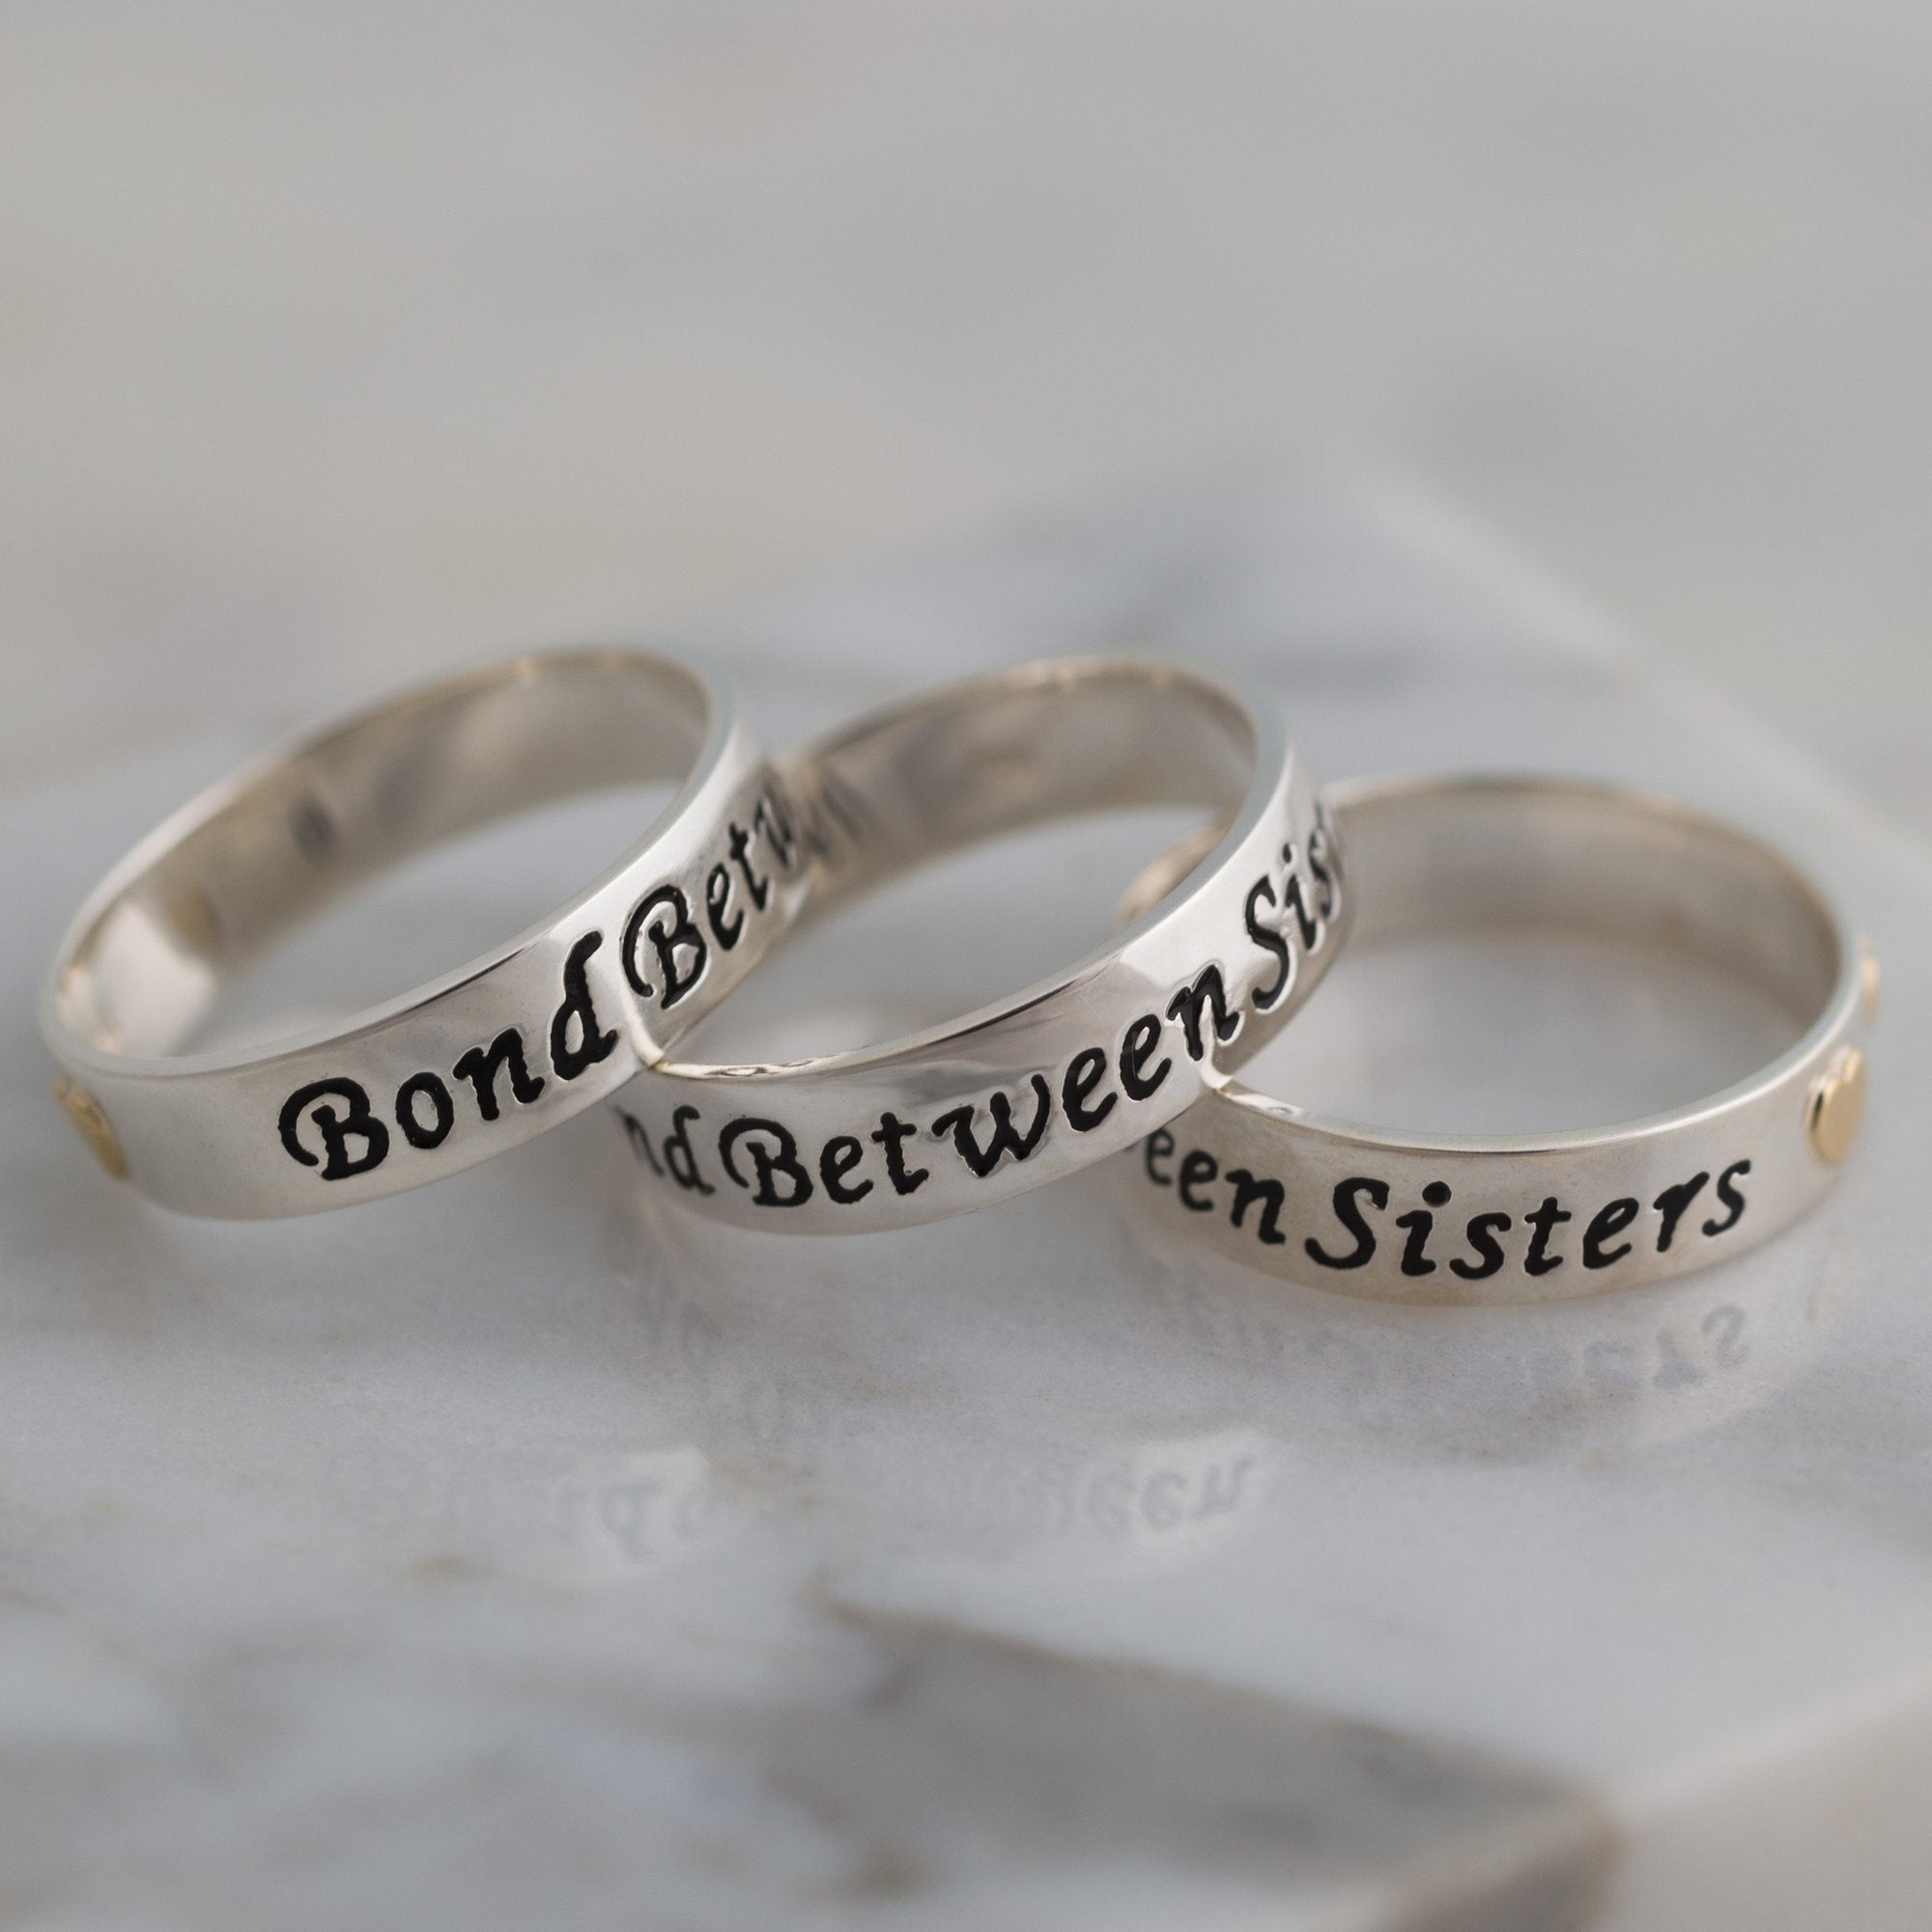 Bond Between Sisters Sterling Ring - 2 Sisters - 9